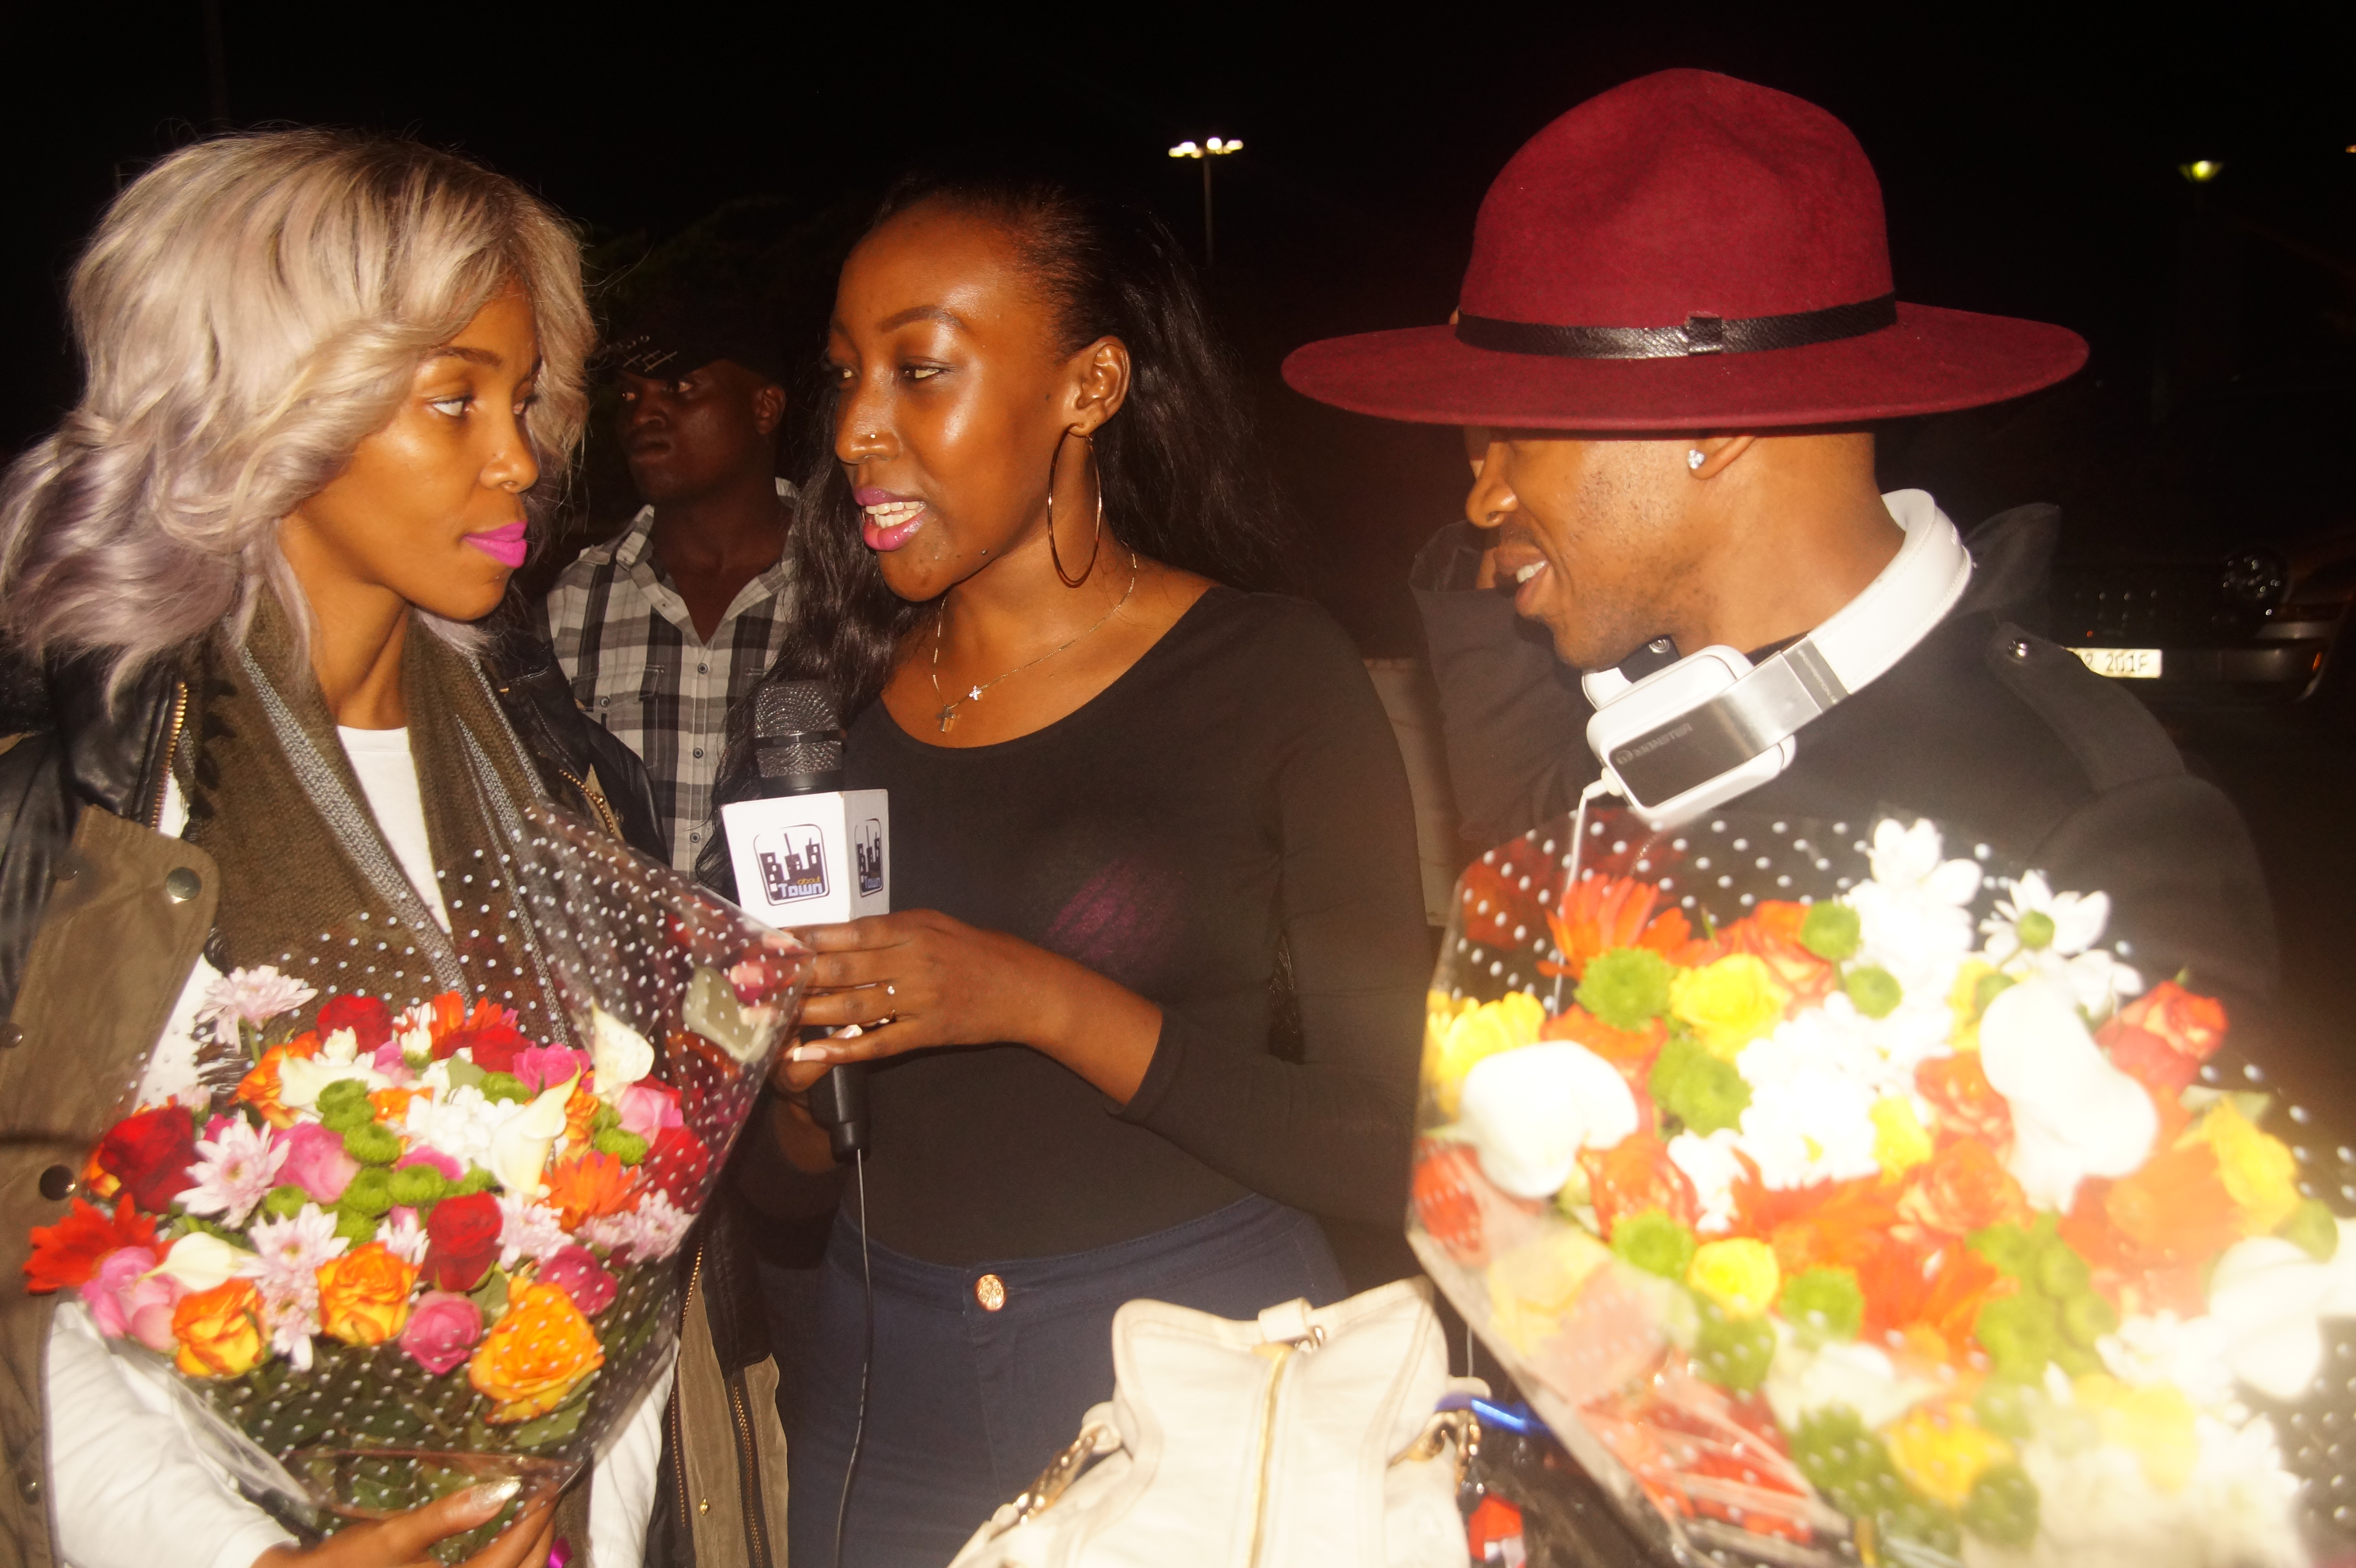 NTV About Town's Tinah Teise interviews Mafikizolo.